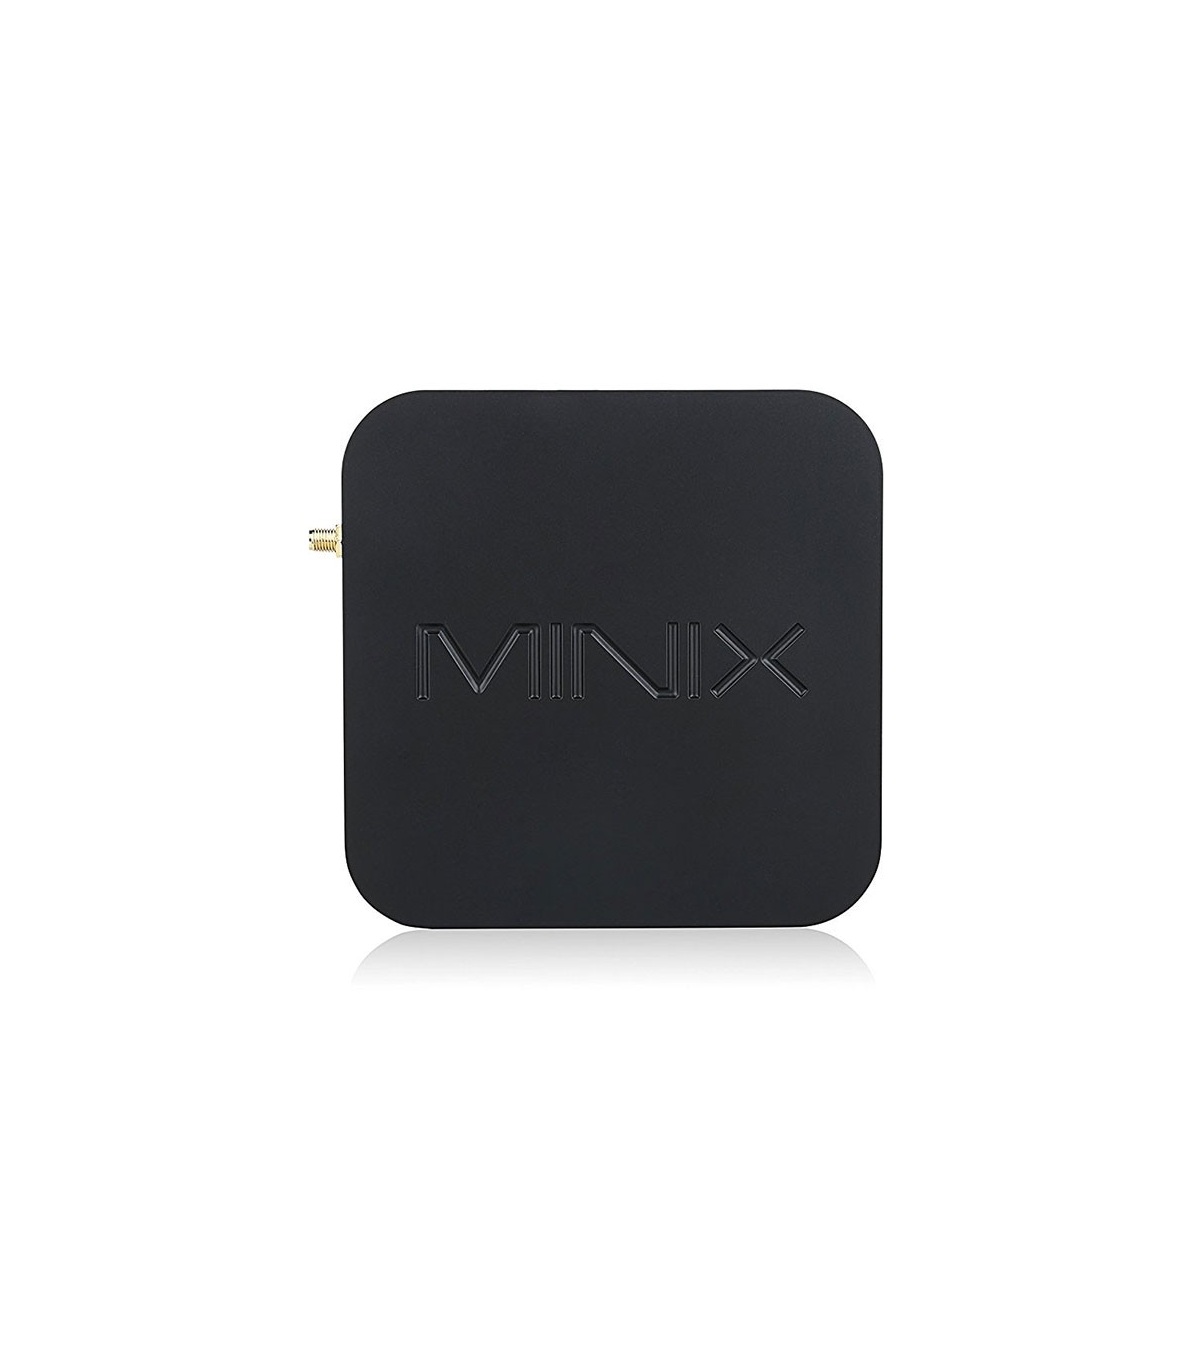 اندروید باکس مینیکس MiNiX Android Box NEO U1